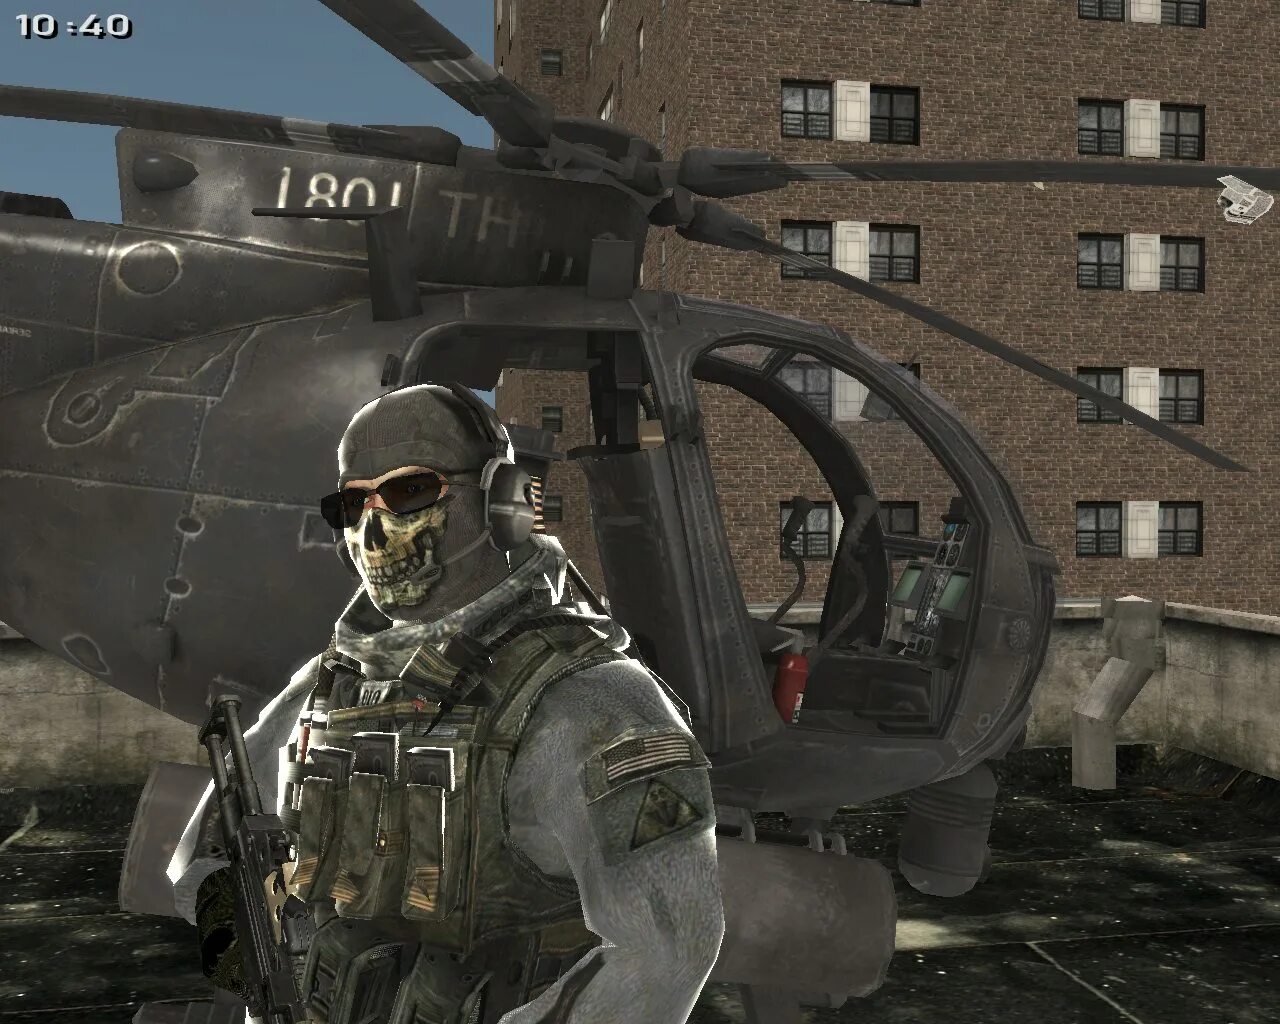 Гоуст mw3. Гоуст Модерн варфаер 2. Call of Duty Modern Warfare 3 гоуст. Калавдюти Модерн варфаер 2 гоуст. Модерн варфаер на андроид